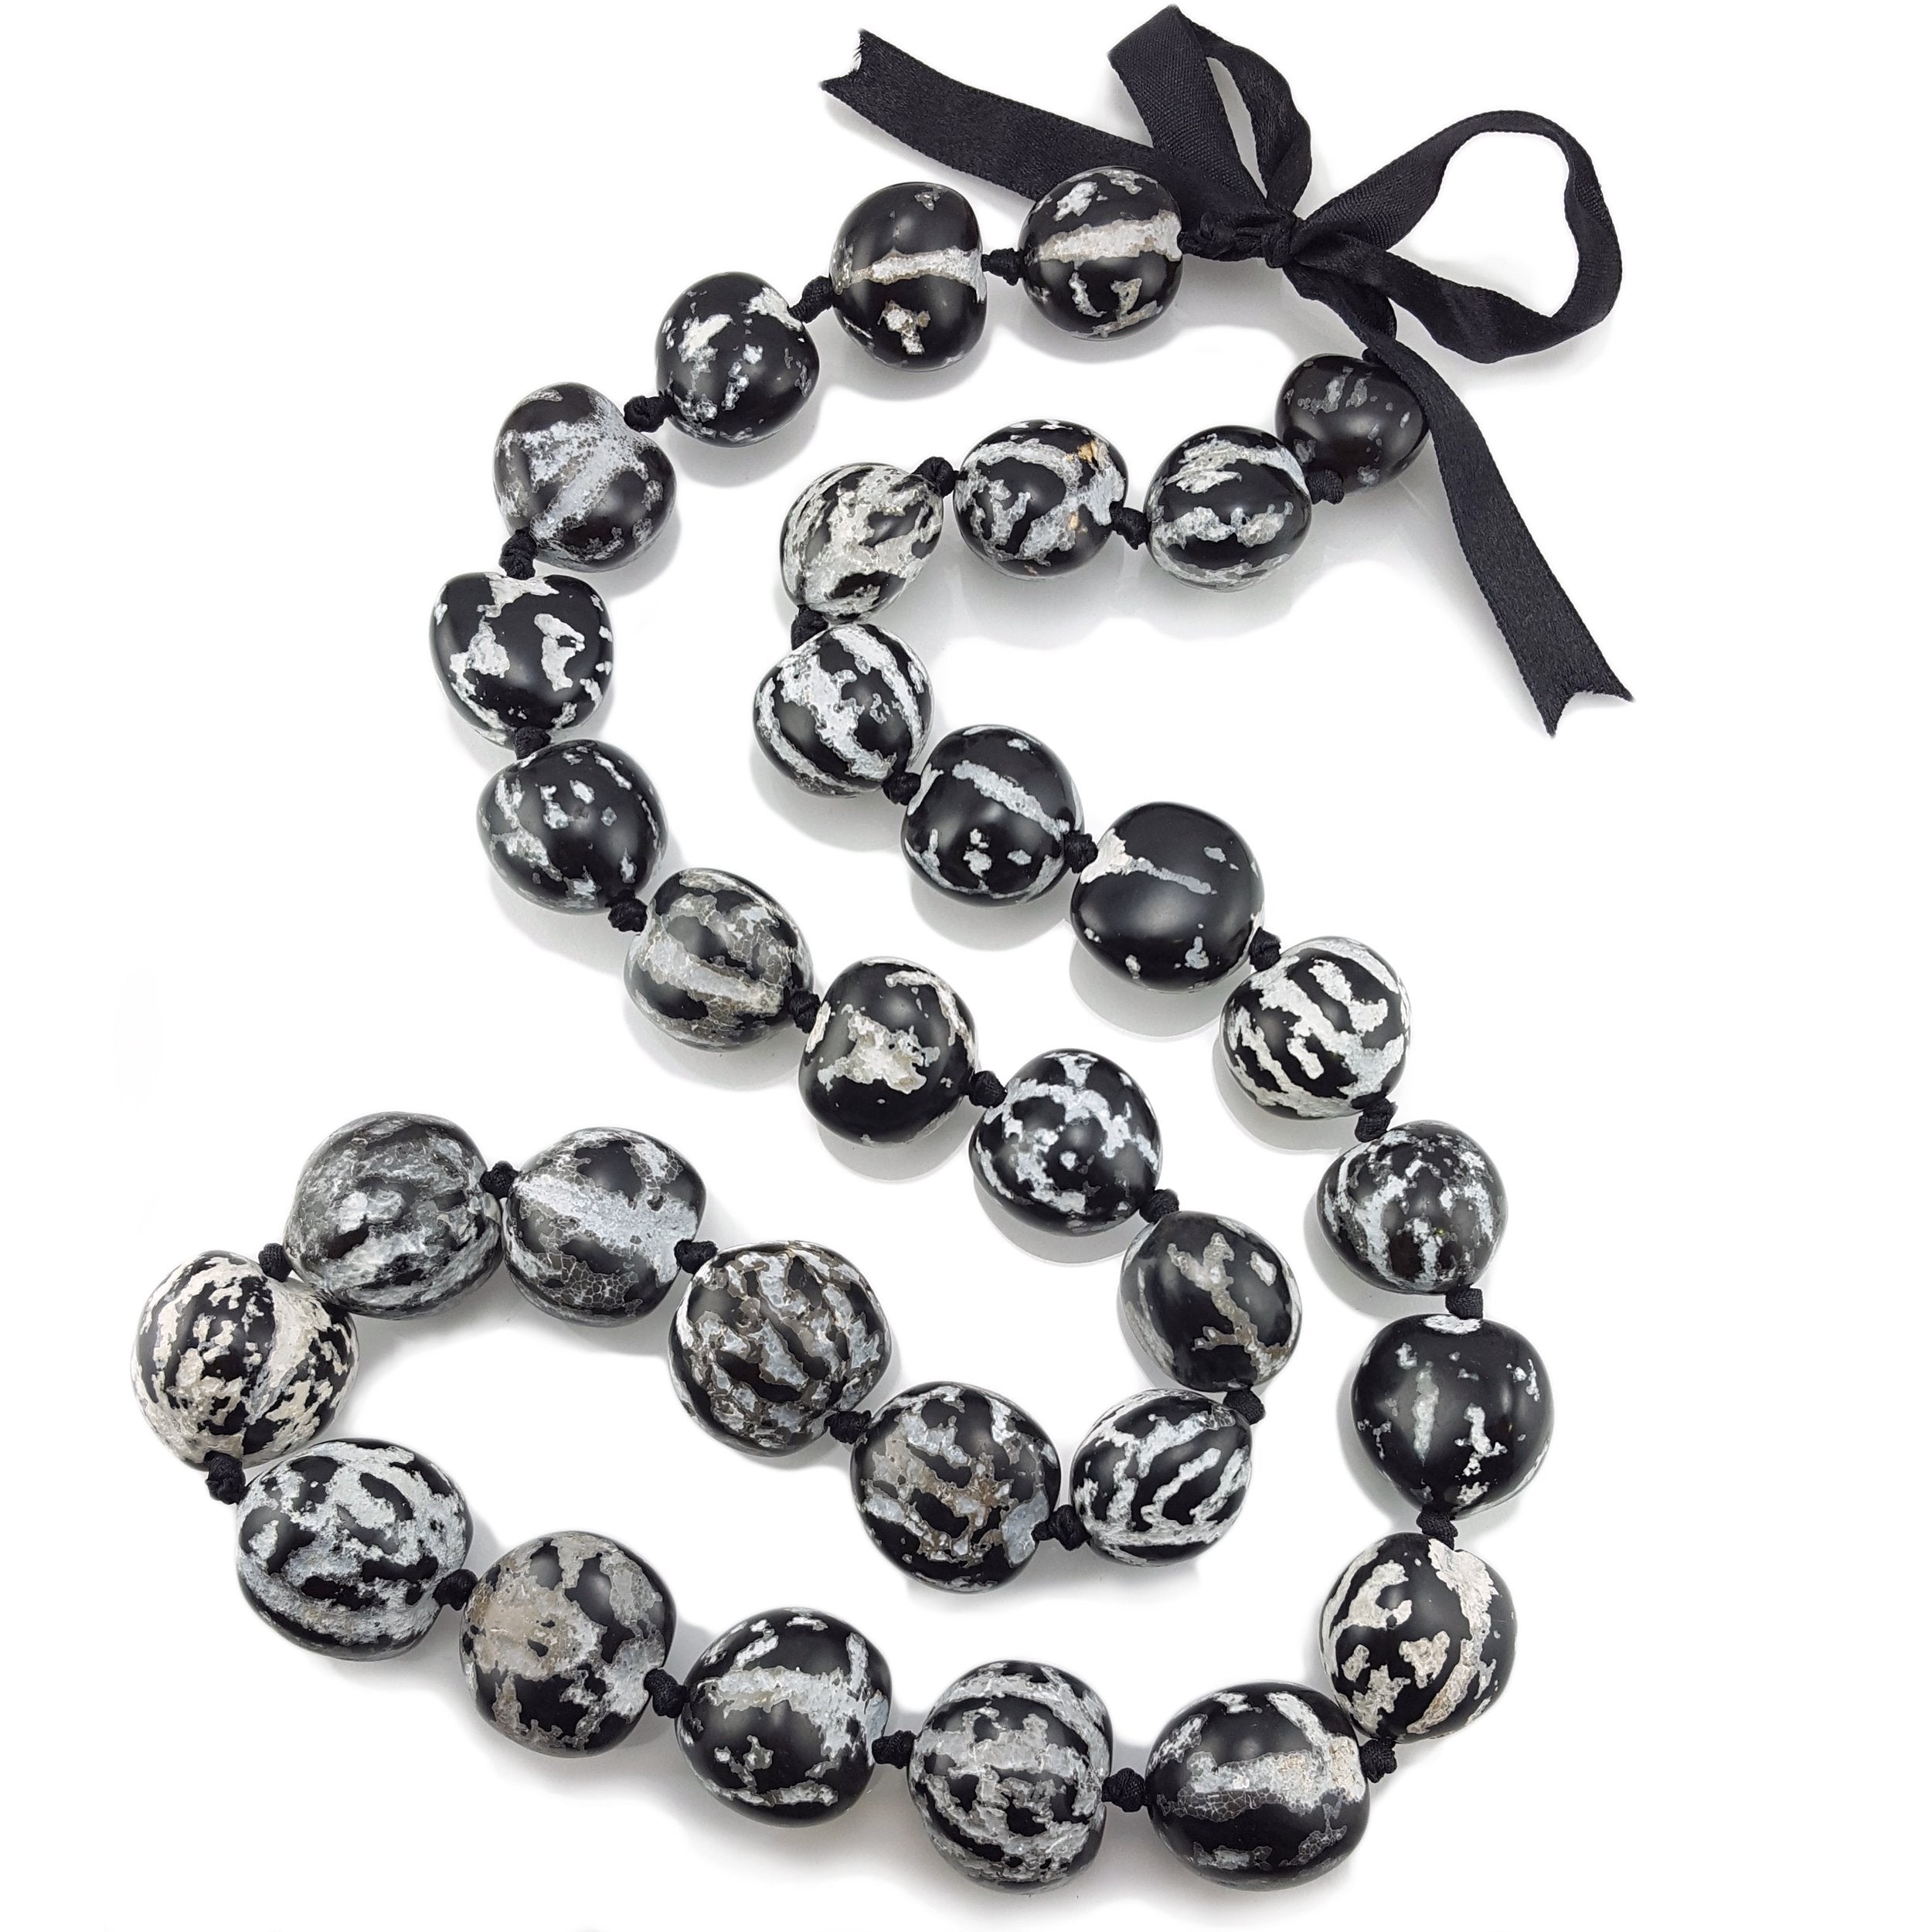 Black and White Kukui Nut Lei Necklace and Bracelet Set